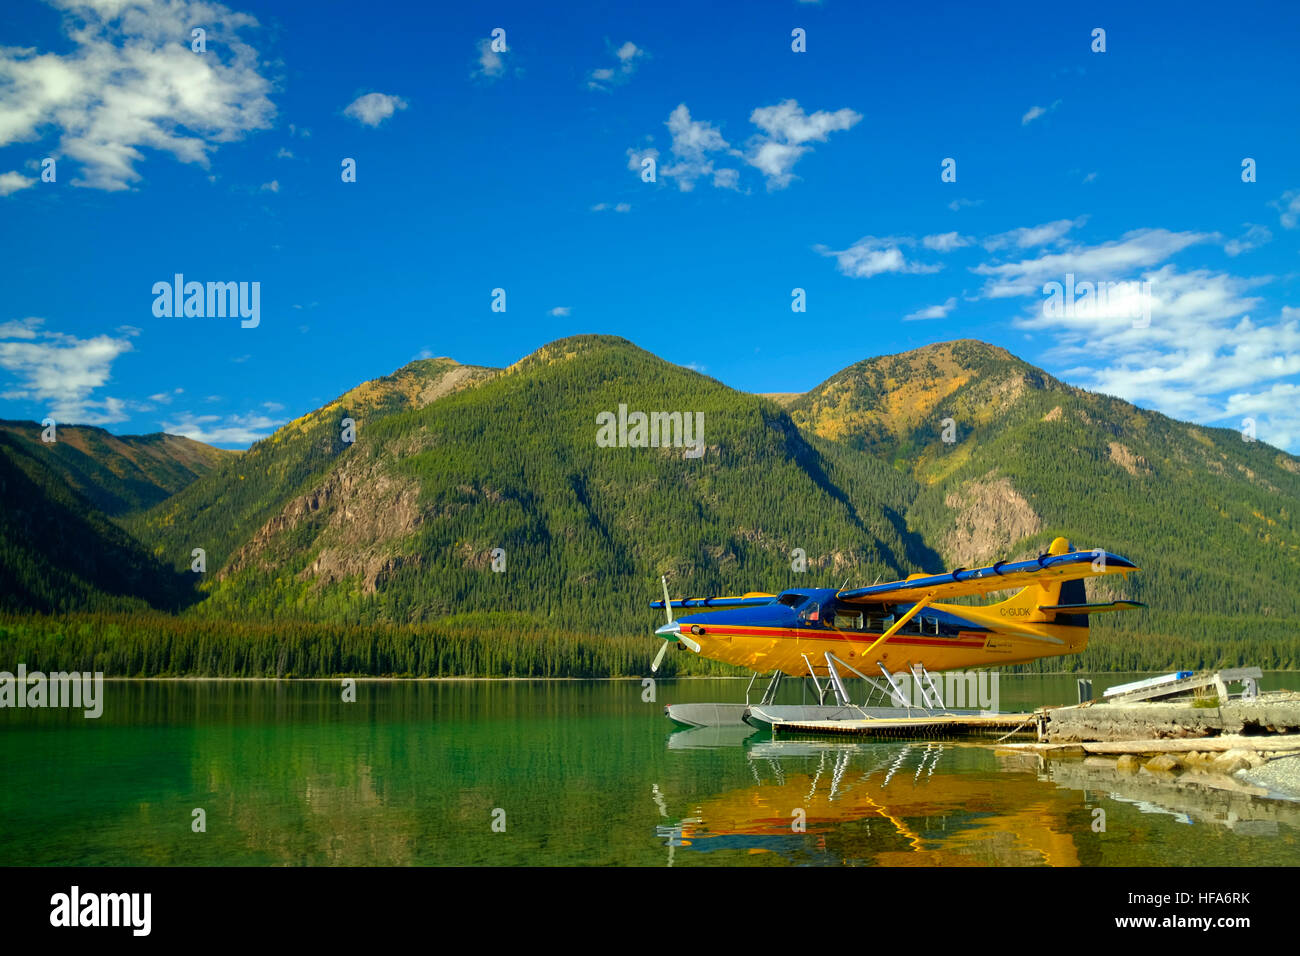 Turbine Otter Wasserflugzeug auf der Anklagebank in den Northern Rockies Lodge am Muncho Lake in BC Kanada. Die de Havilland Canada DHC-3 Otter ist eine einmotorige Stockfoto